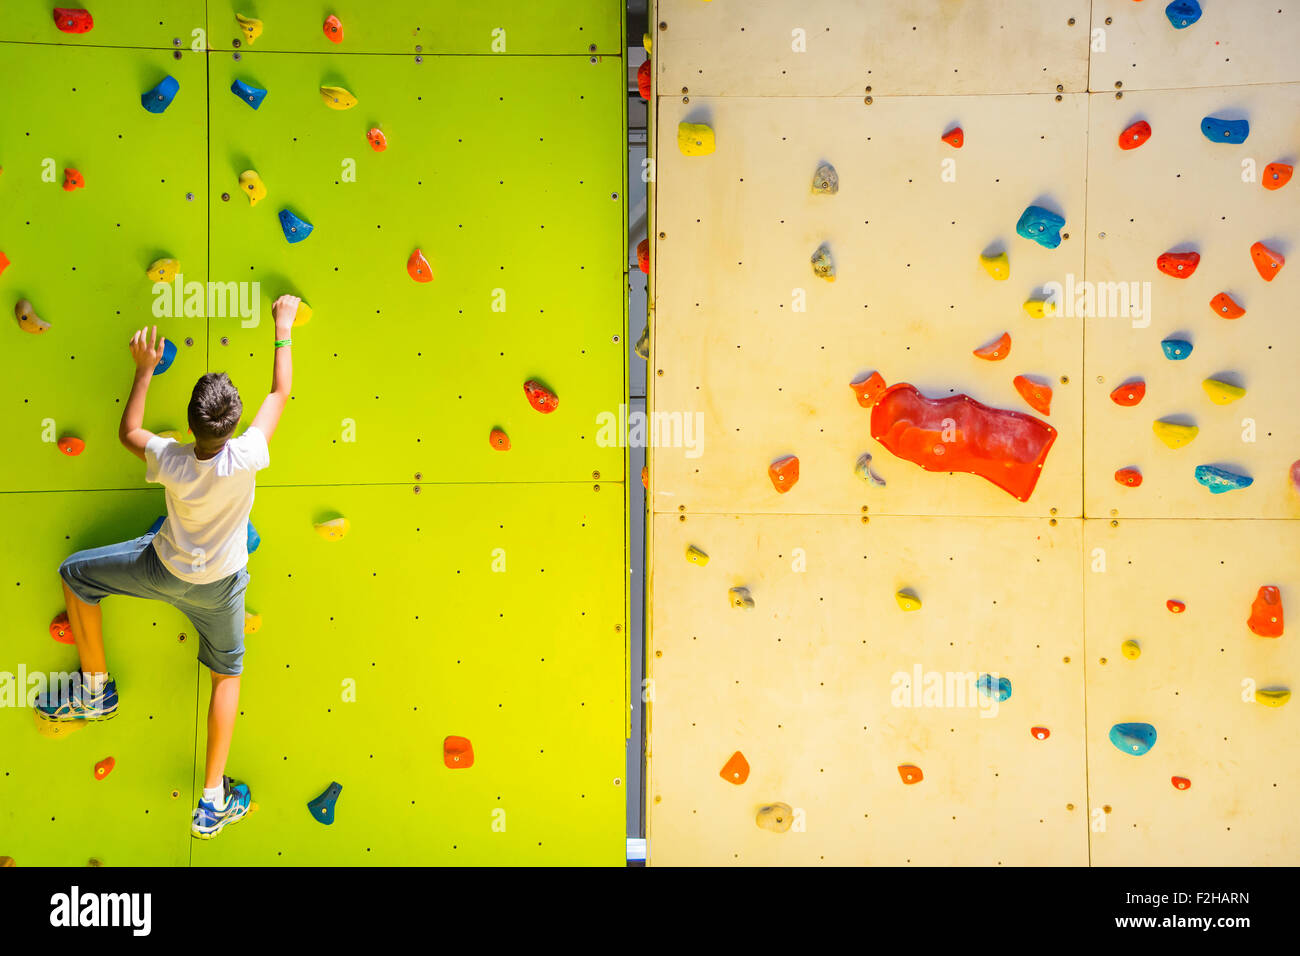 Bologne, Italy-May:31,2015 un sportif d'escalade sur un mur artificiel pour la formation au cours d'un jour nuageux Banque D'Images